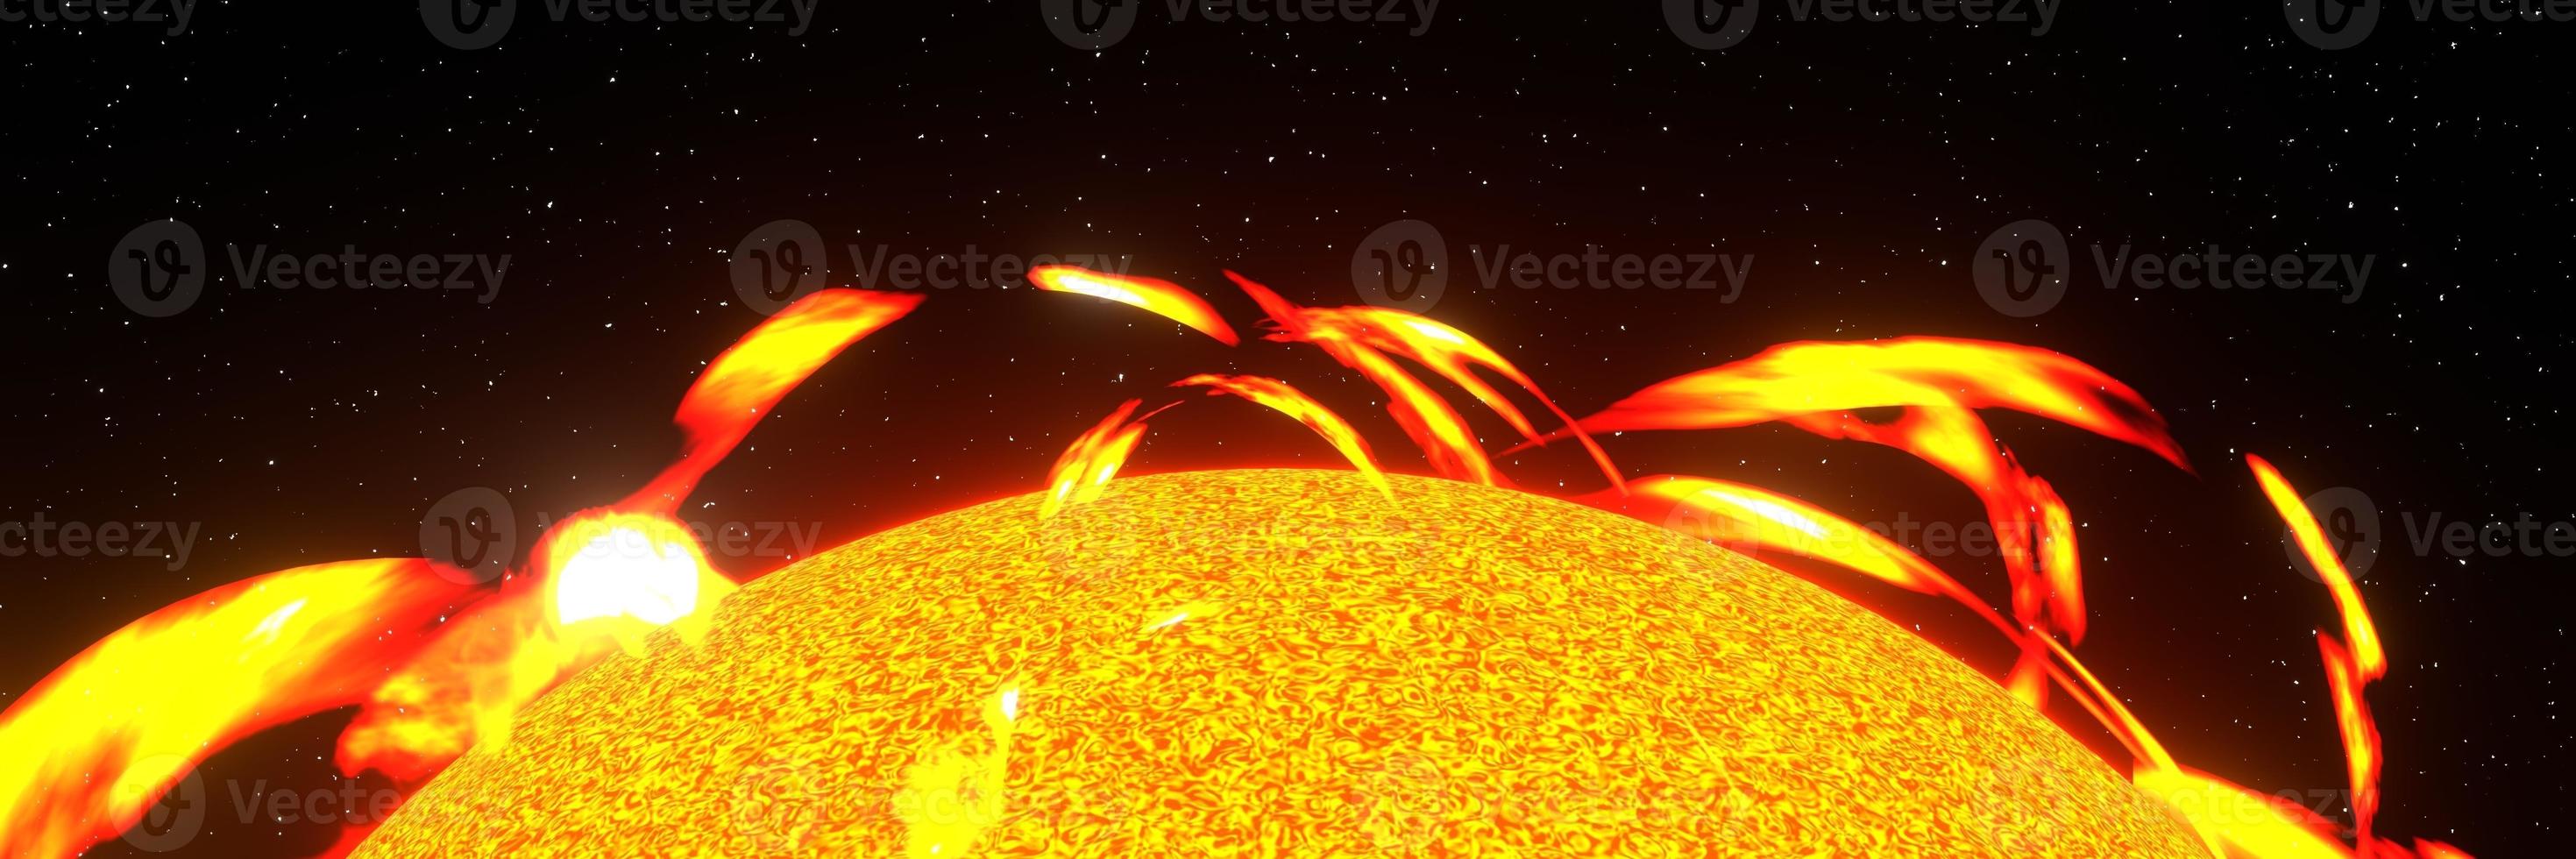 zon zonnevlam in de ruimte achtergrond panorama 3D-rendering foto